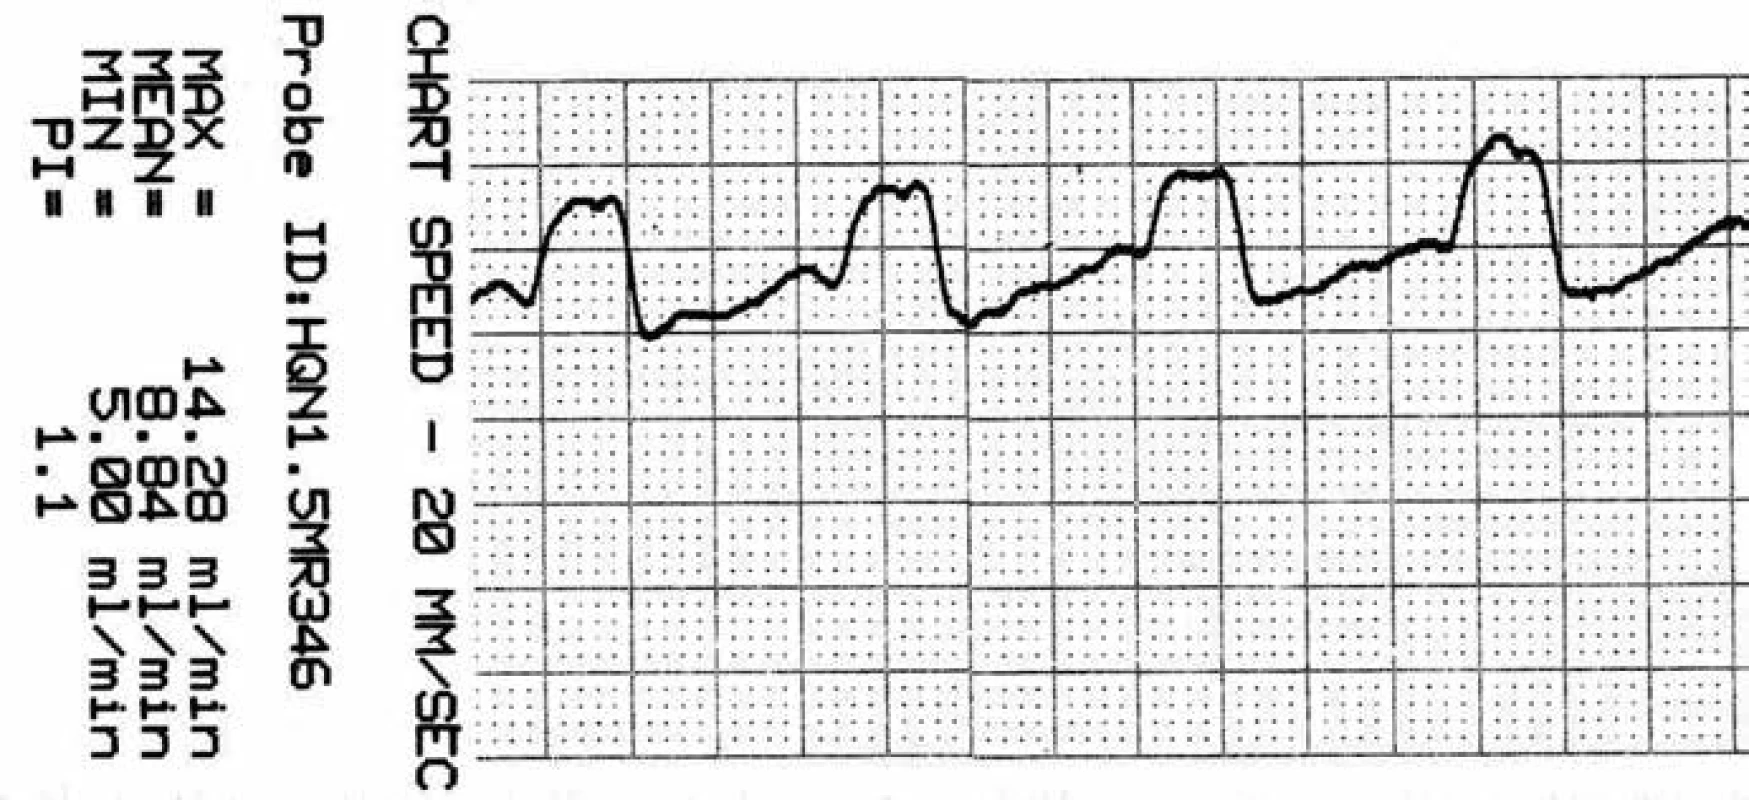 Záznam krevního průtoku v a. temporalis anterior (ATA) před zaklipováním, zachycen průměrný, maximální, minimální průtok a pulzatilní index.